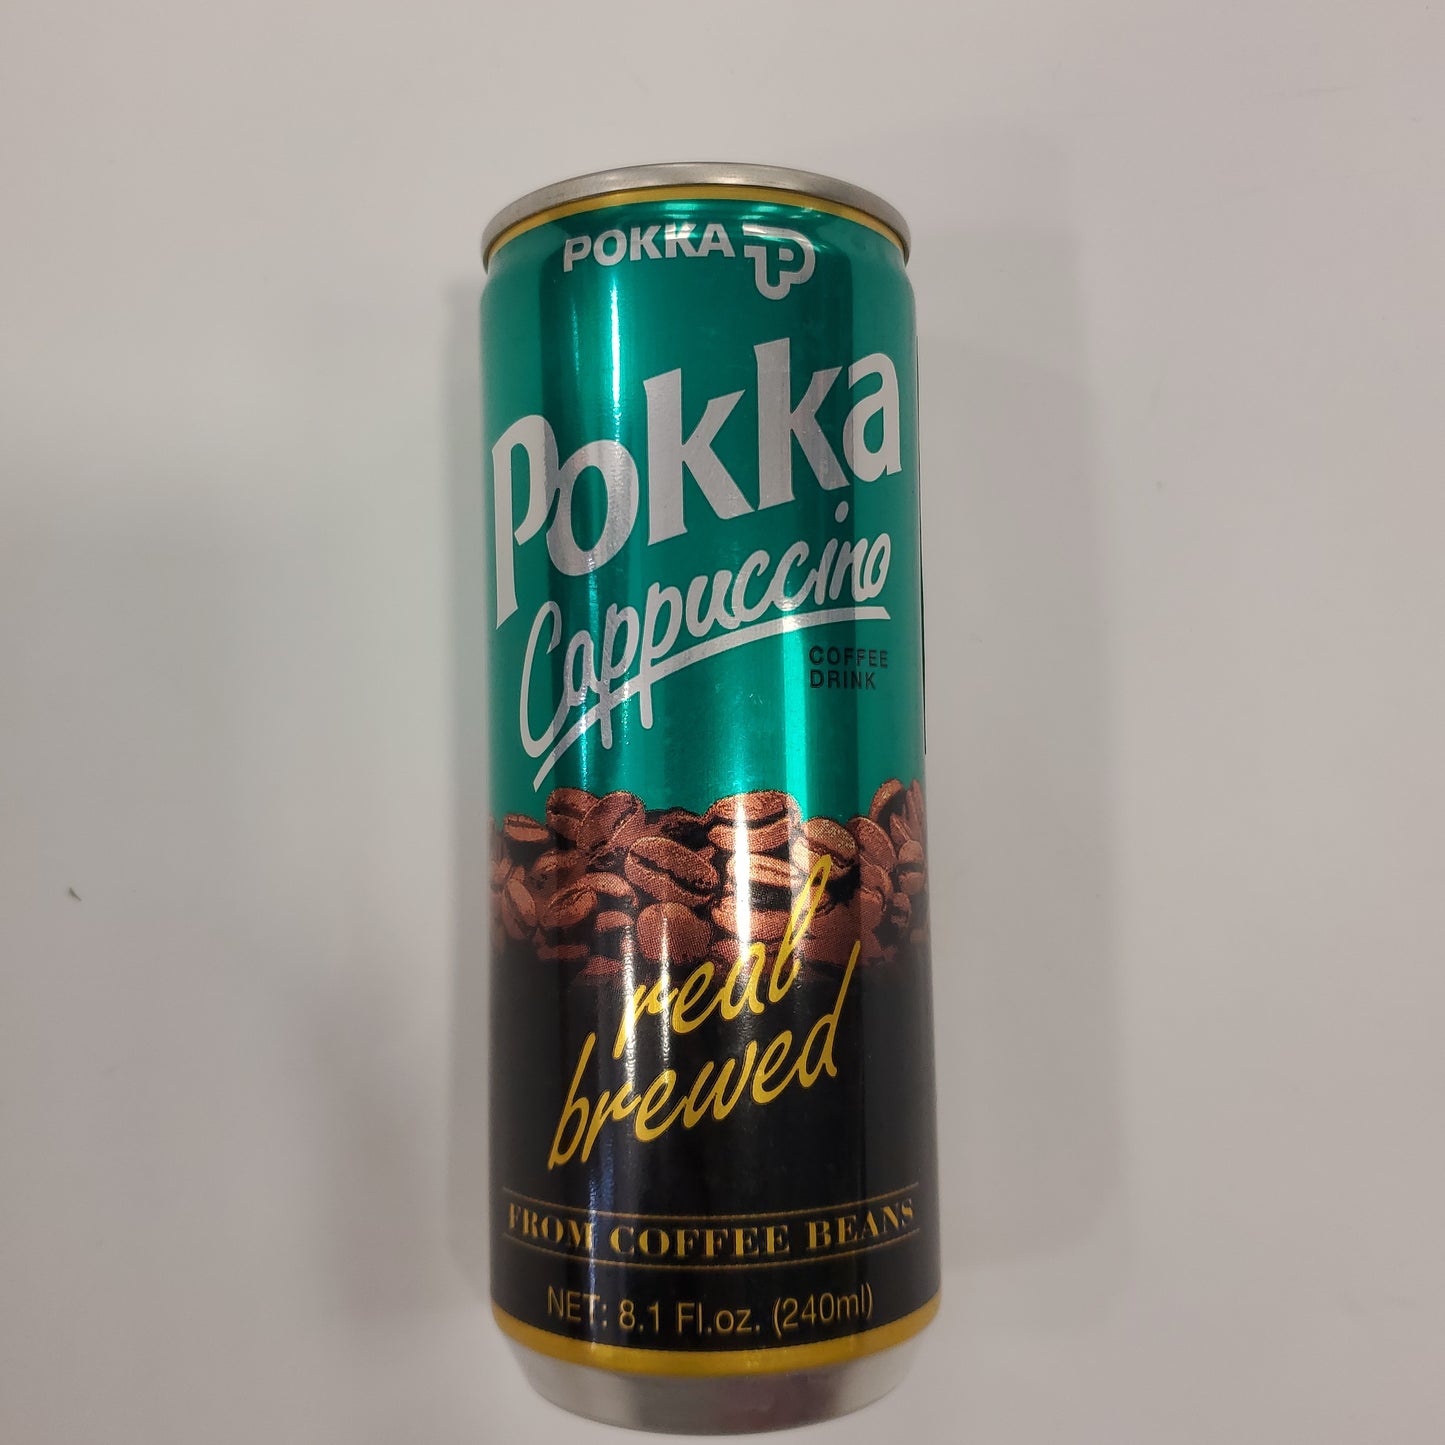 Pokka Cappuccino Coffee 240ml